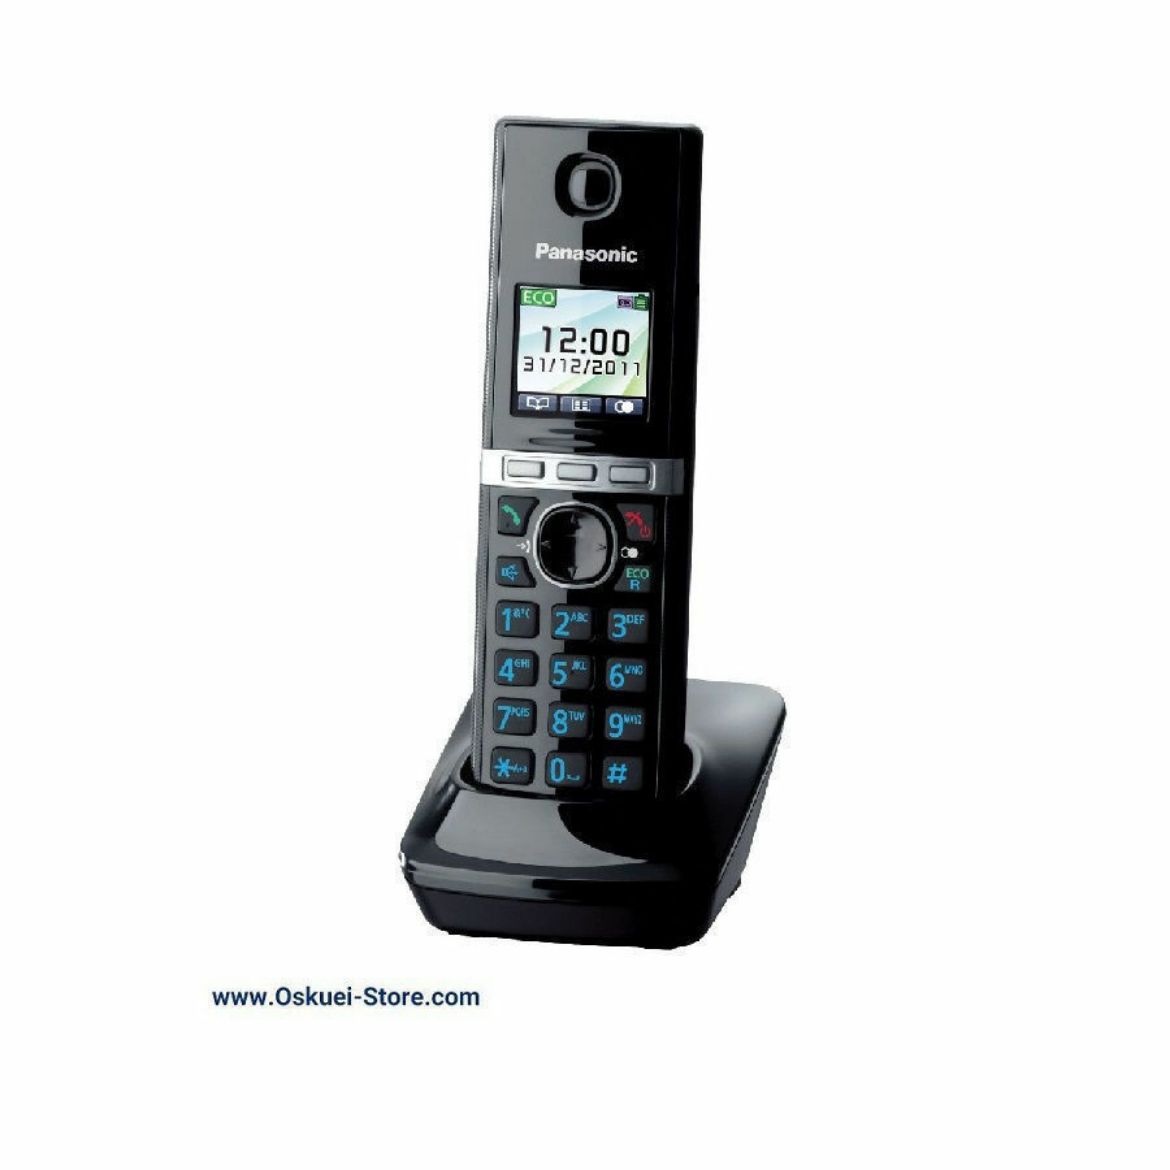 Panasonic KX-TGA805 Cordless Telephone Black